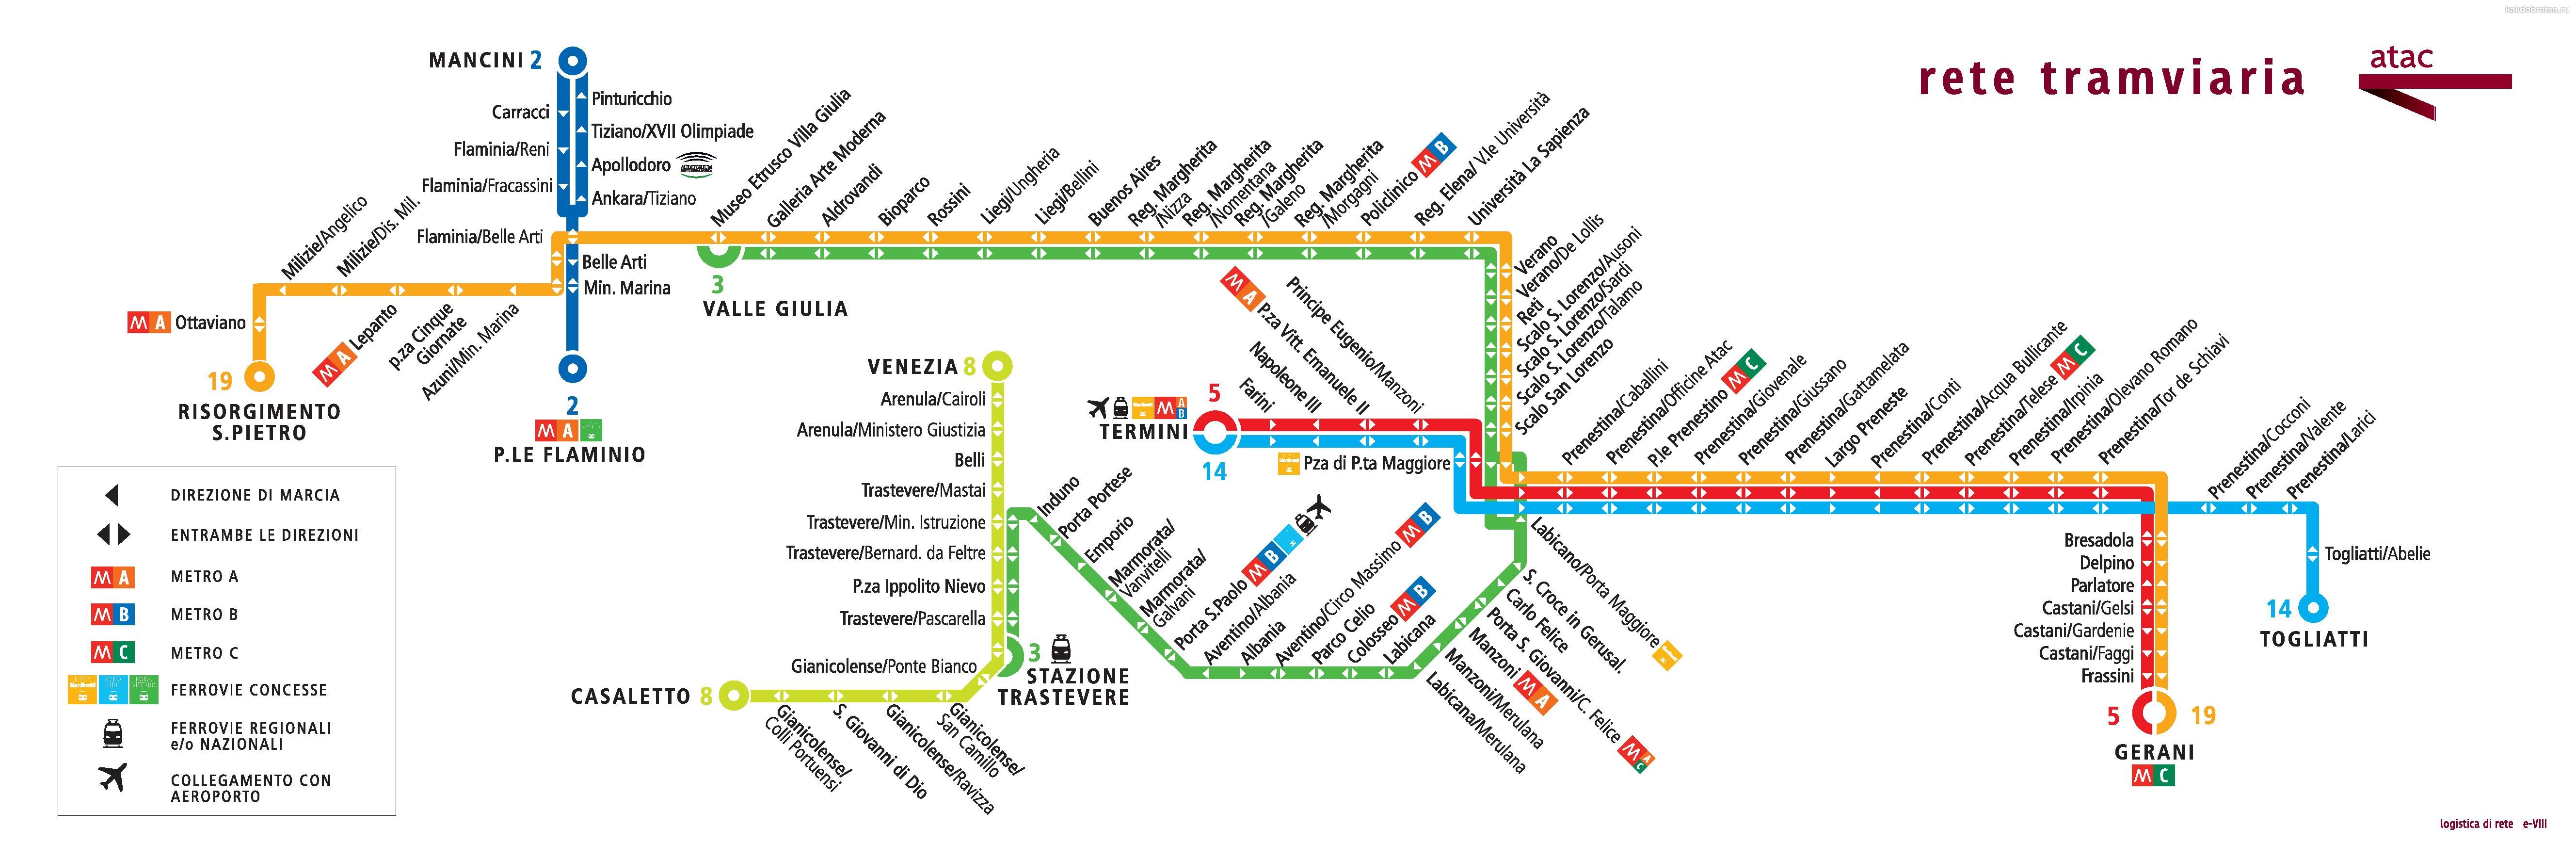 Карта трамваев Рима